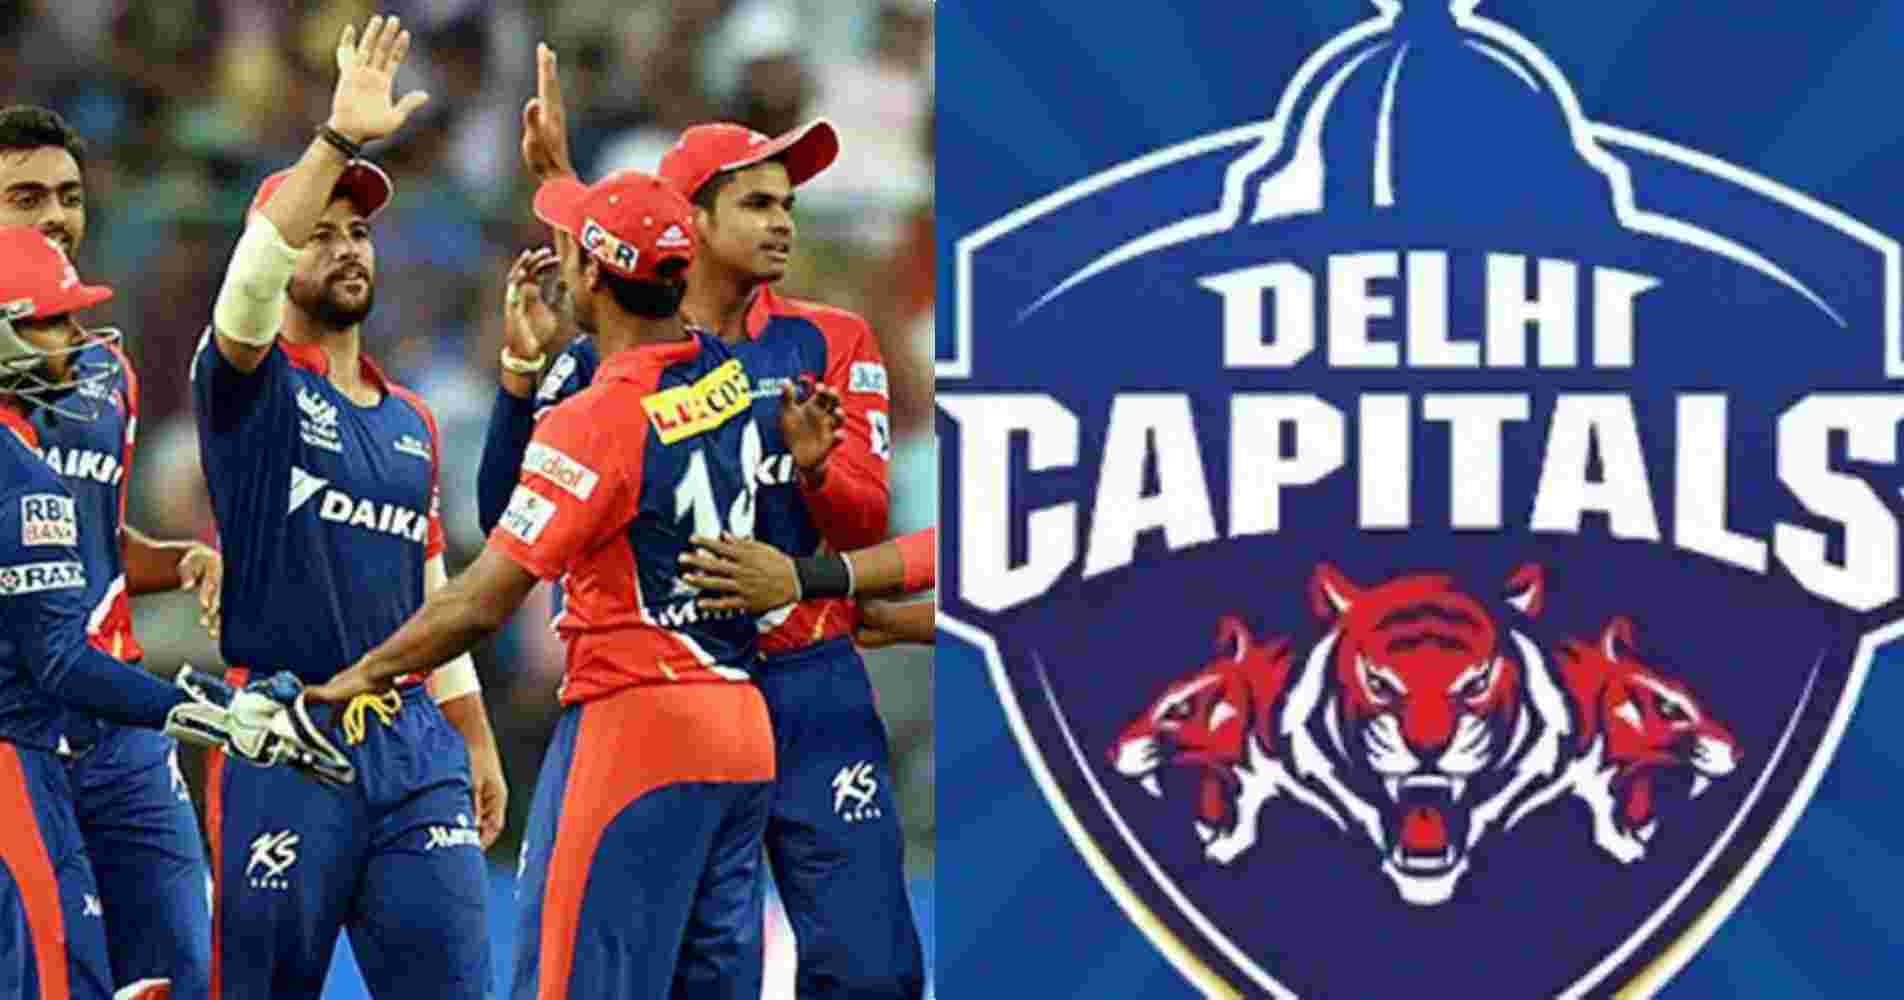 Delhi Capitals: Delhi Daredevils IPL team renamed as Delhi Capitals